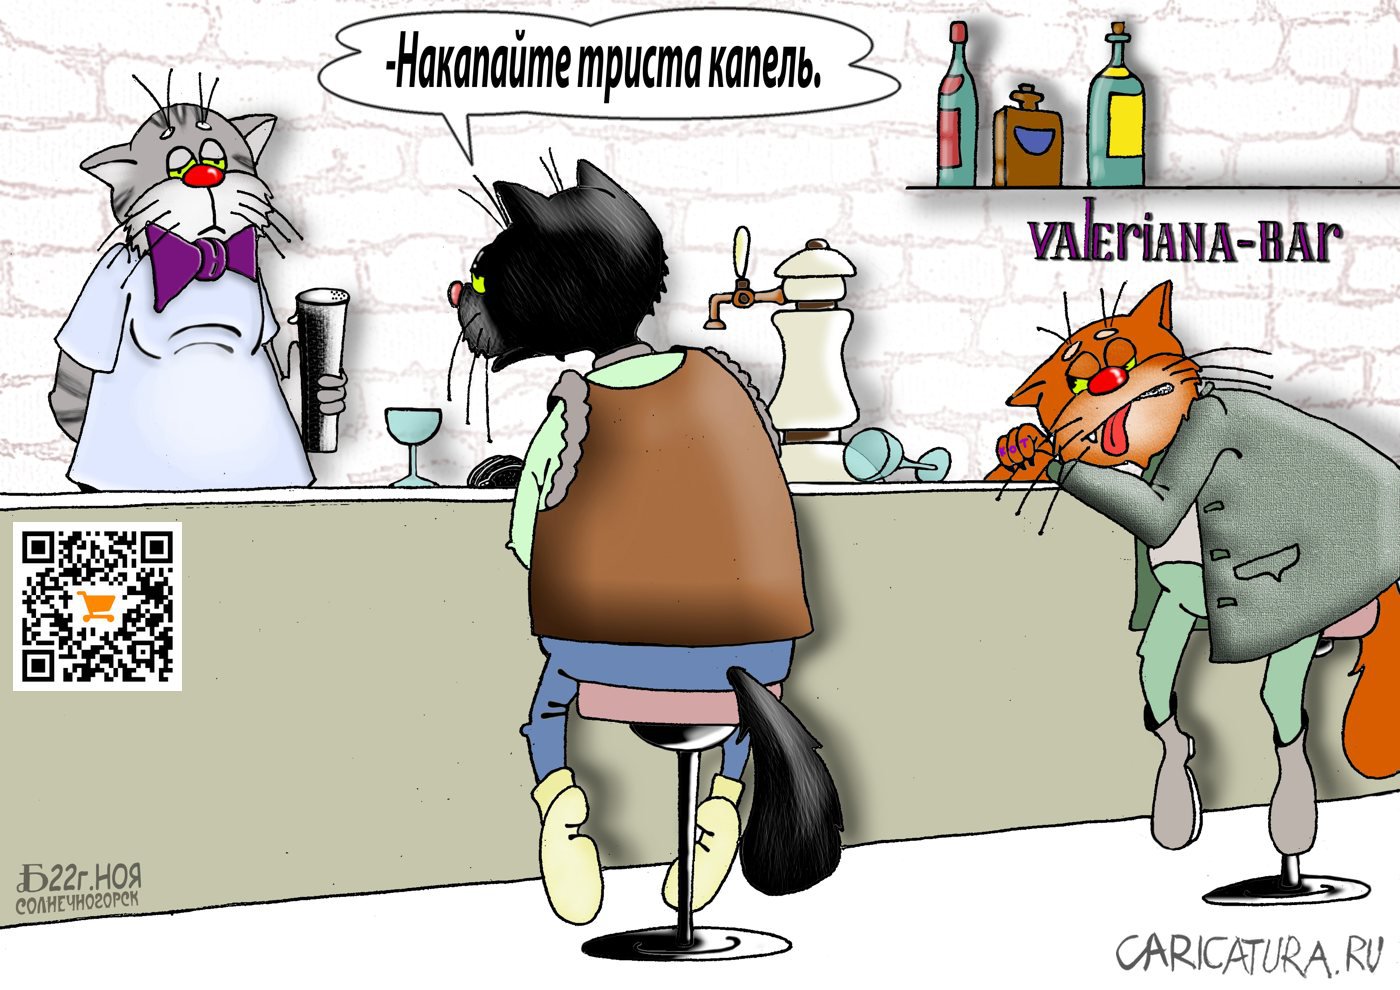 Карикатура "ПроКискину тоску", Борис Демин